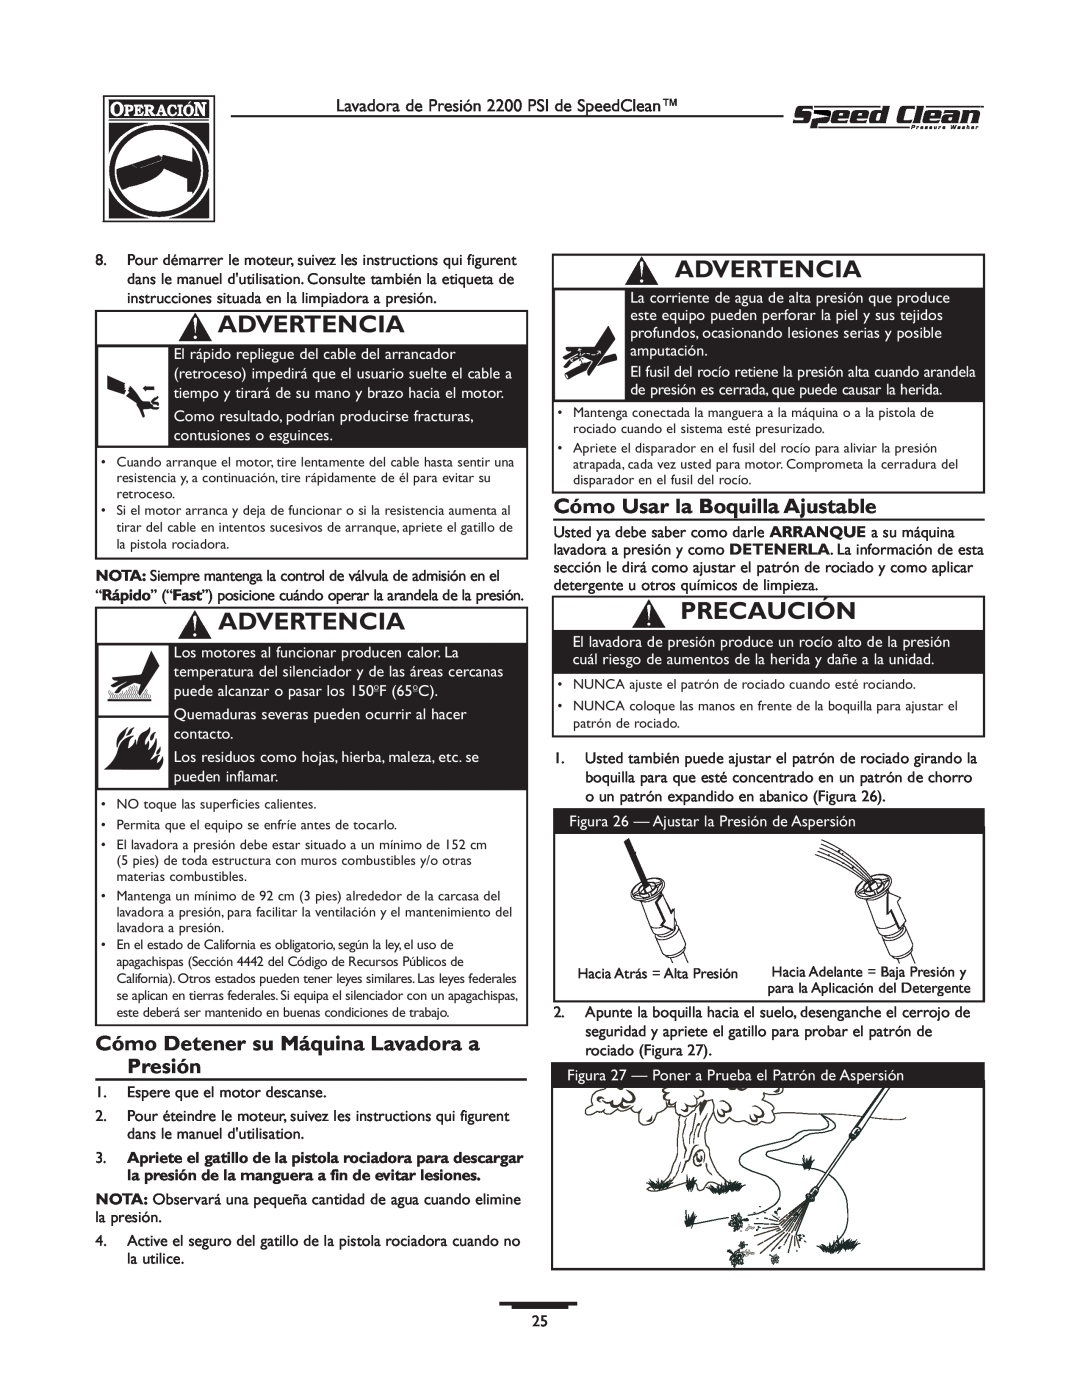 Briggs & Stratton 020239-0 Cómo Detener su Máquina Lavadora a Presión, Cómo Usar la Boquilla Ajustable, Advertencia 